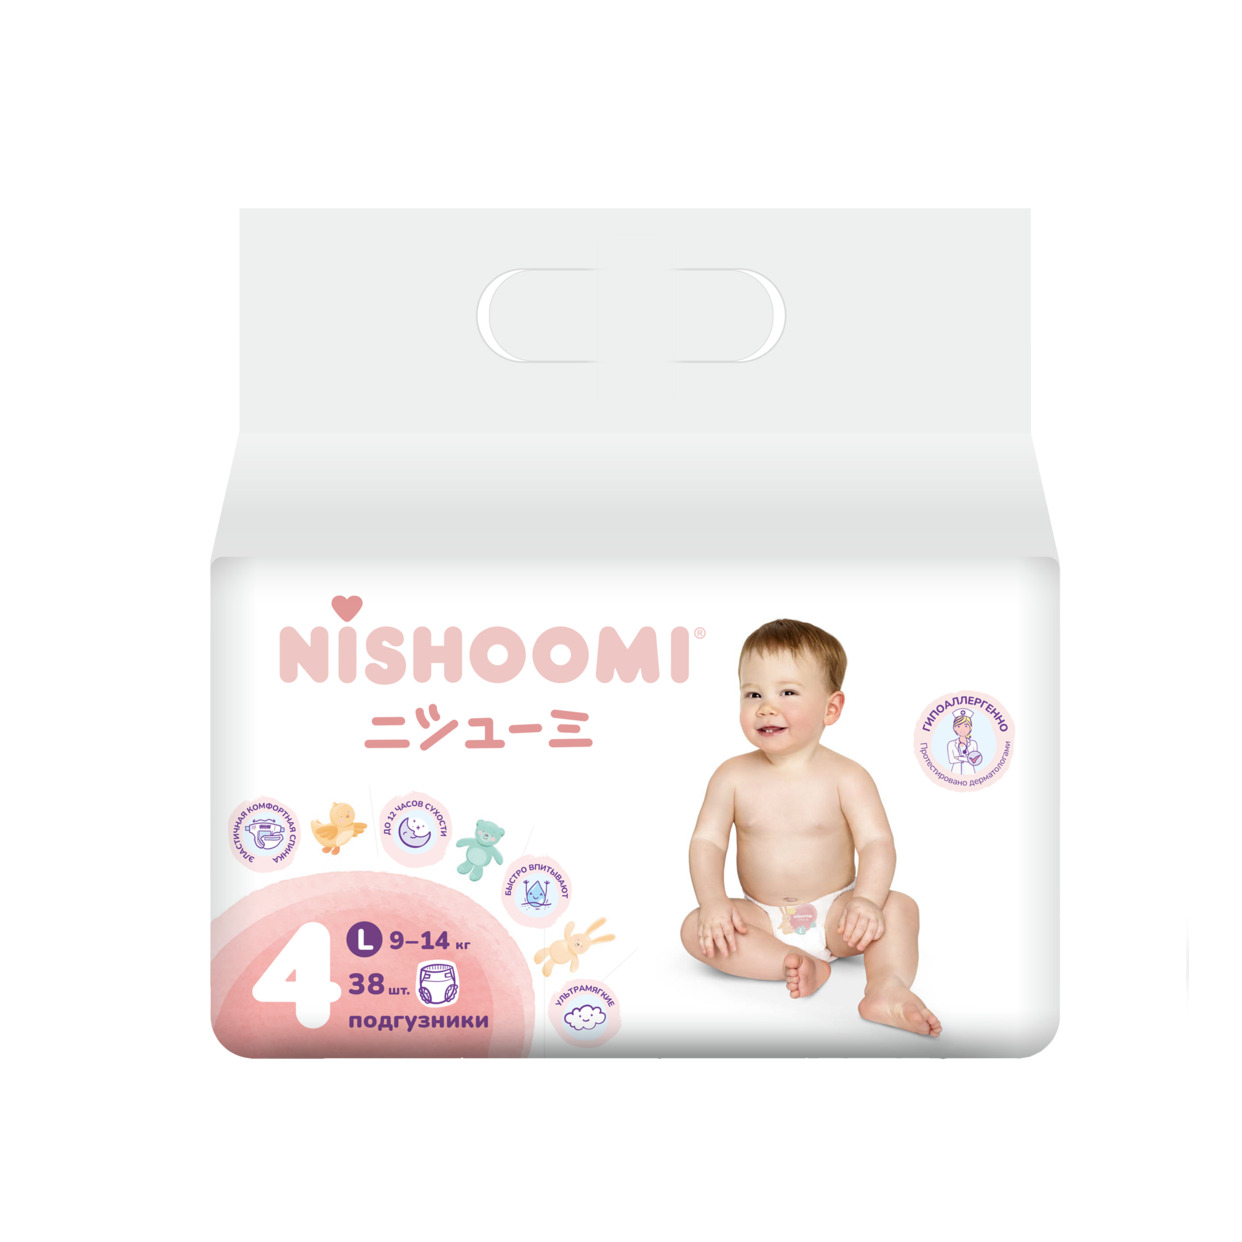 Изделия санитарно-гигиенические разового использования для ухода за детьми Nishoomi подгузники детские одноразовые. Размер «Макси» ( L (4)), для детей весом 9-14 кг, 38 штук в уп.